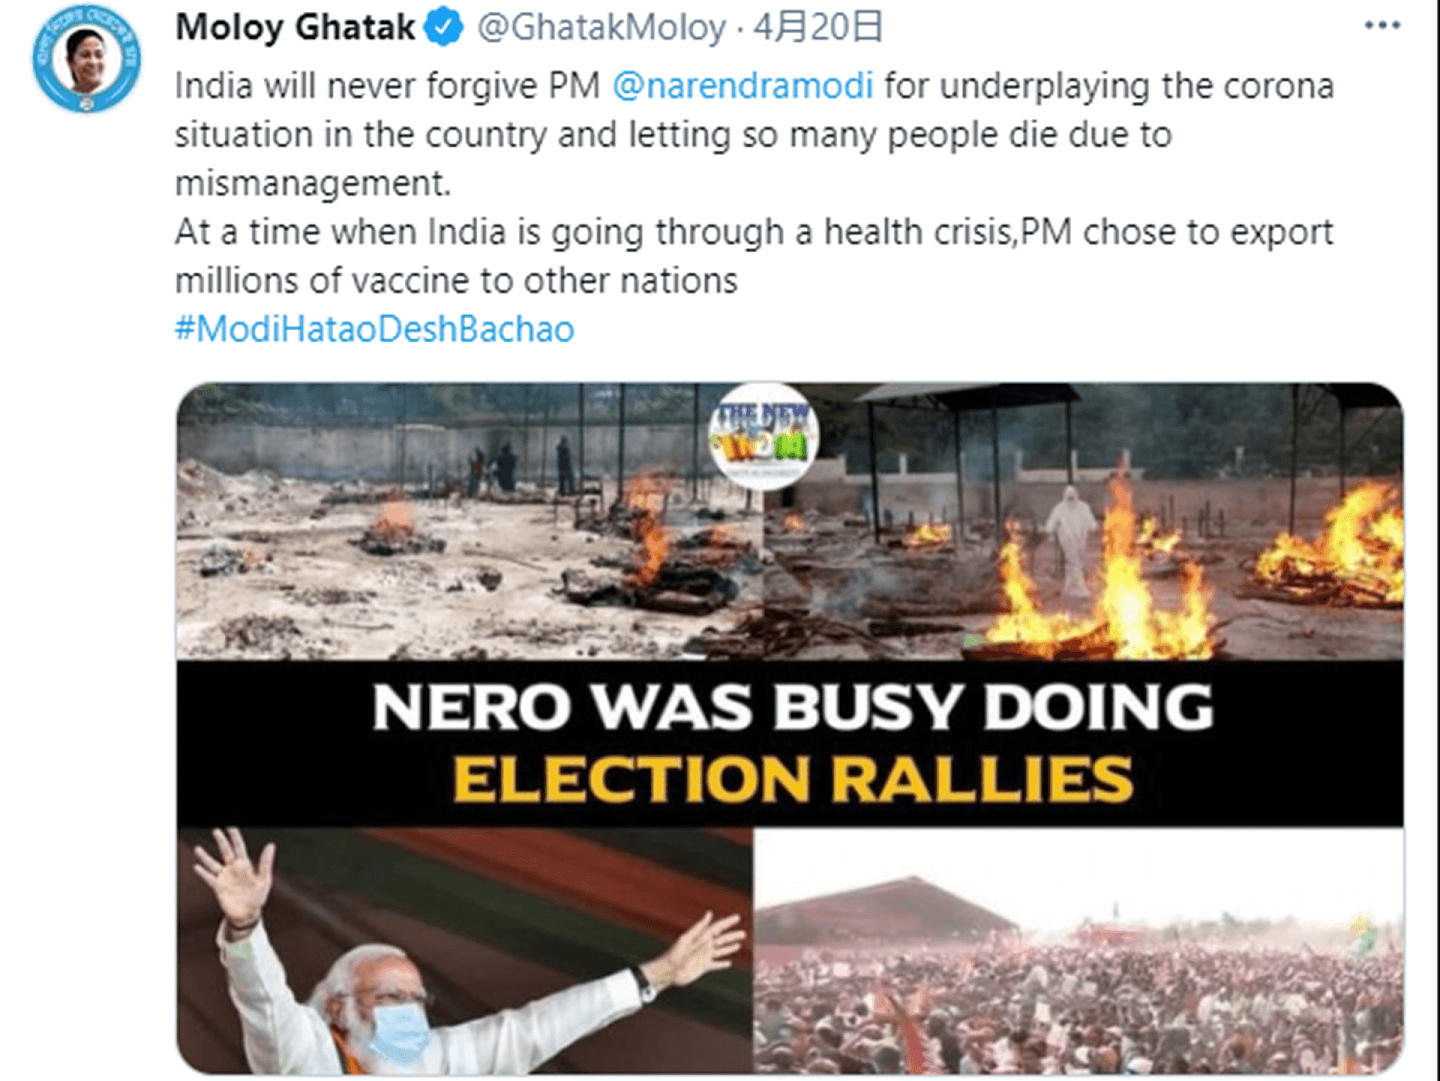 莫迪政府要求删除的推特内容，比如印度地方邦部长4月20日发推特说，印度永远不会原谅莫迪，配图中是民众露天焚烧因人传人的新冠疫情死亡的亲人尸体，与大型密集庆祝活动，正在同时发生。（Twitter@GhatakMoloy）